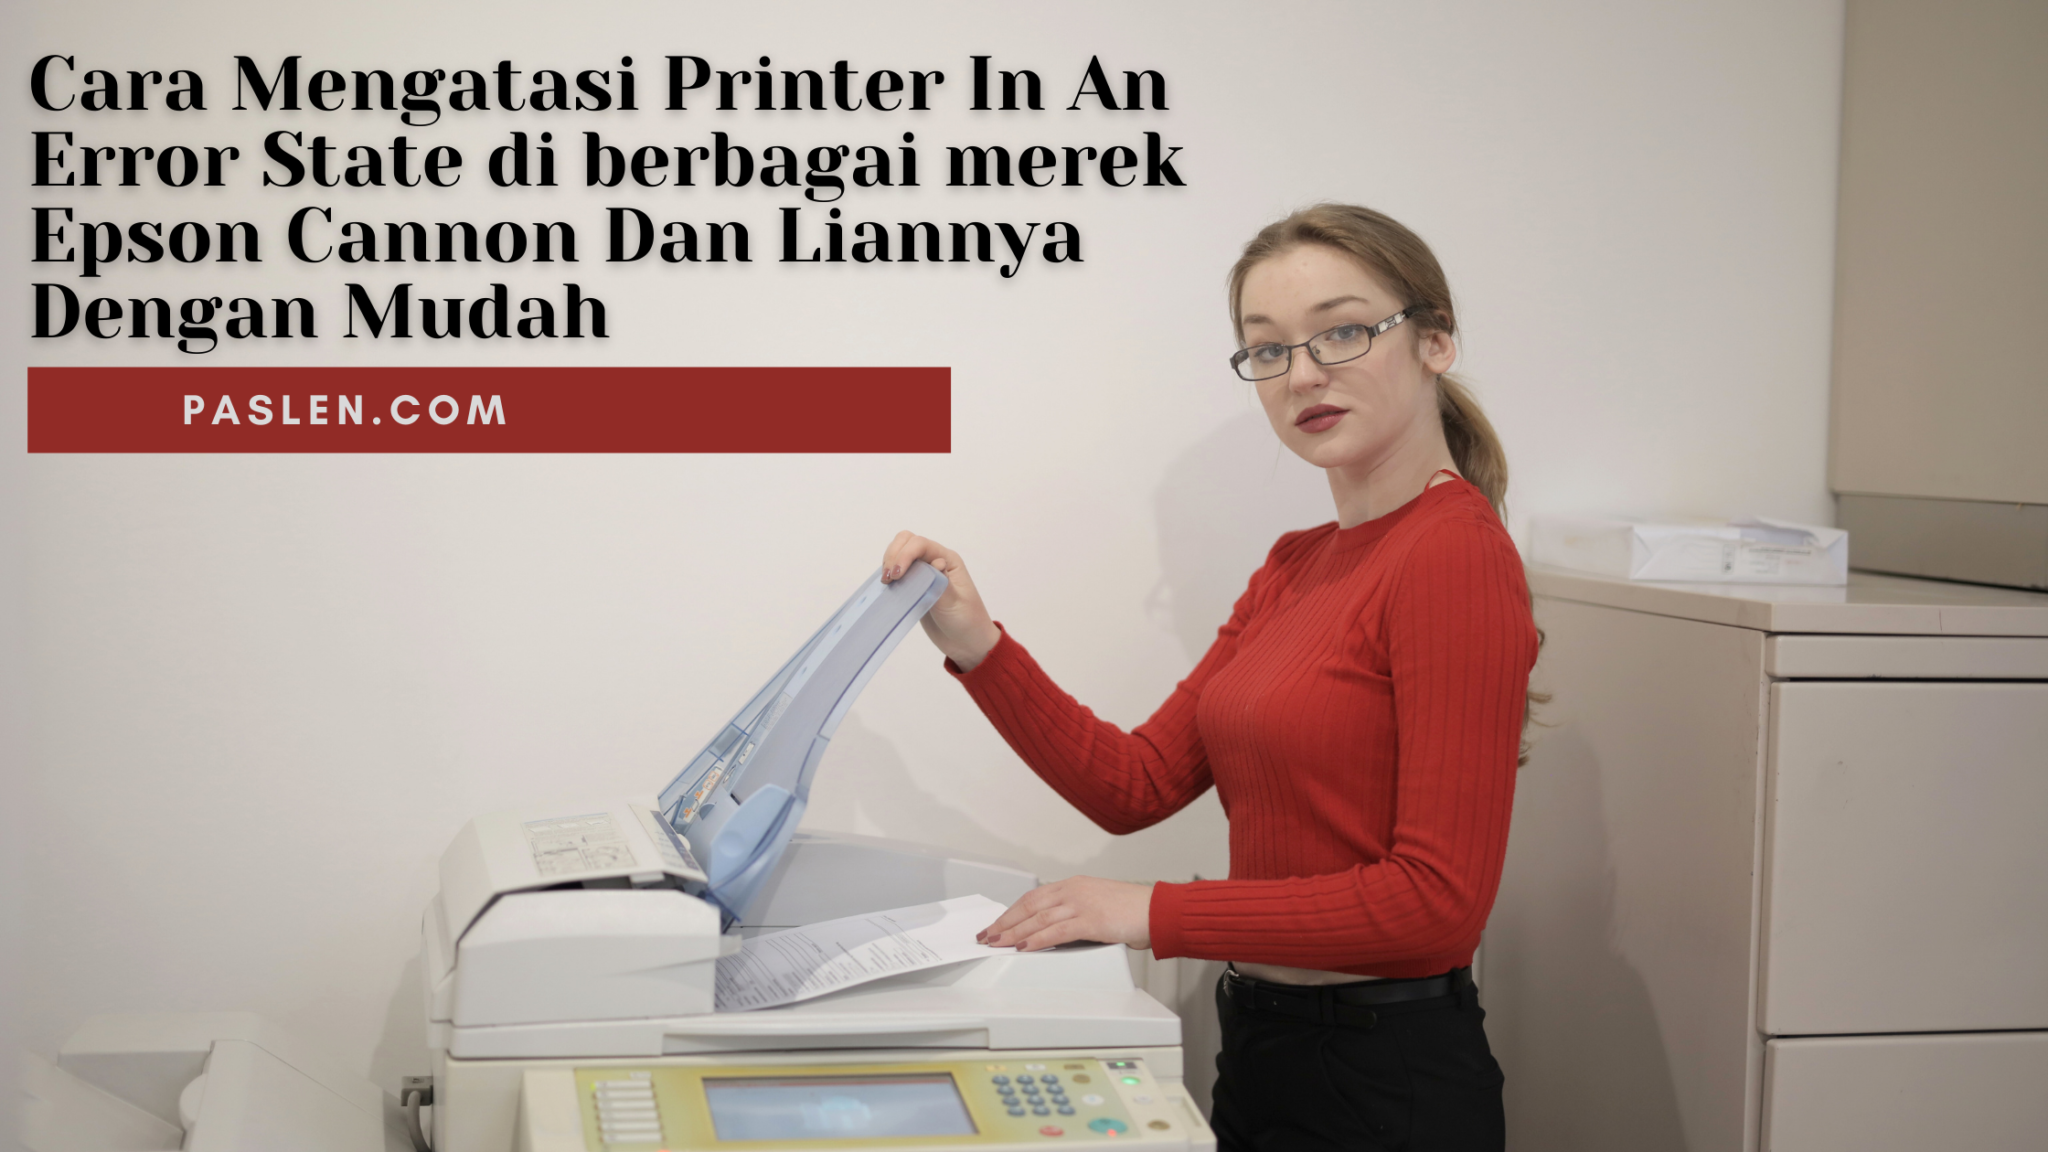 Cara Mengatasi Printer In An Error State Di Berbagai Merek Epson Cannon Dan Liannya Dengan Mudah 4905